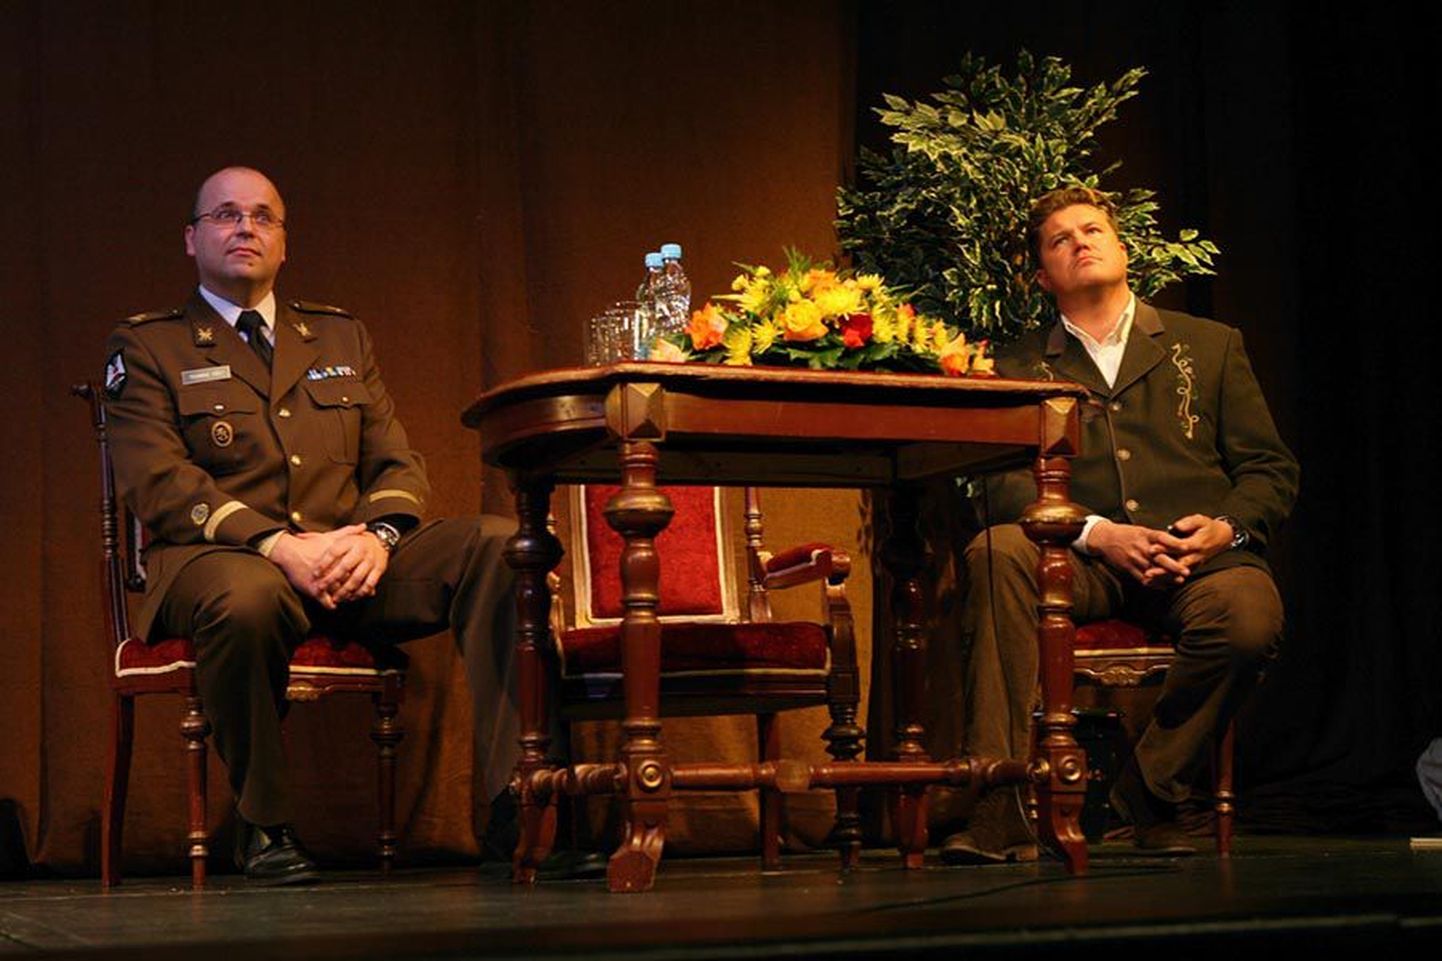 Major Toomas Väli (vasakul) ja nooremleitnant Hannes Võrno esitasid oma ettekandes tõsiseid ja sirgjoonelisi mõtteid.